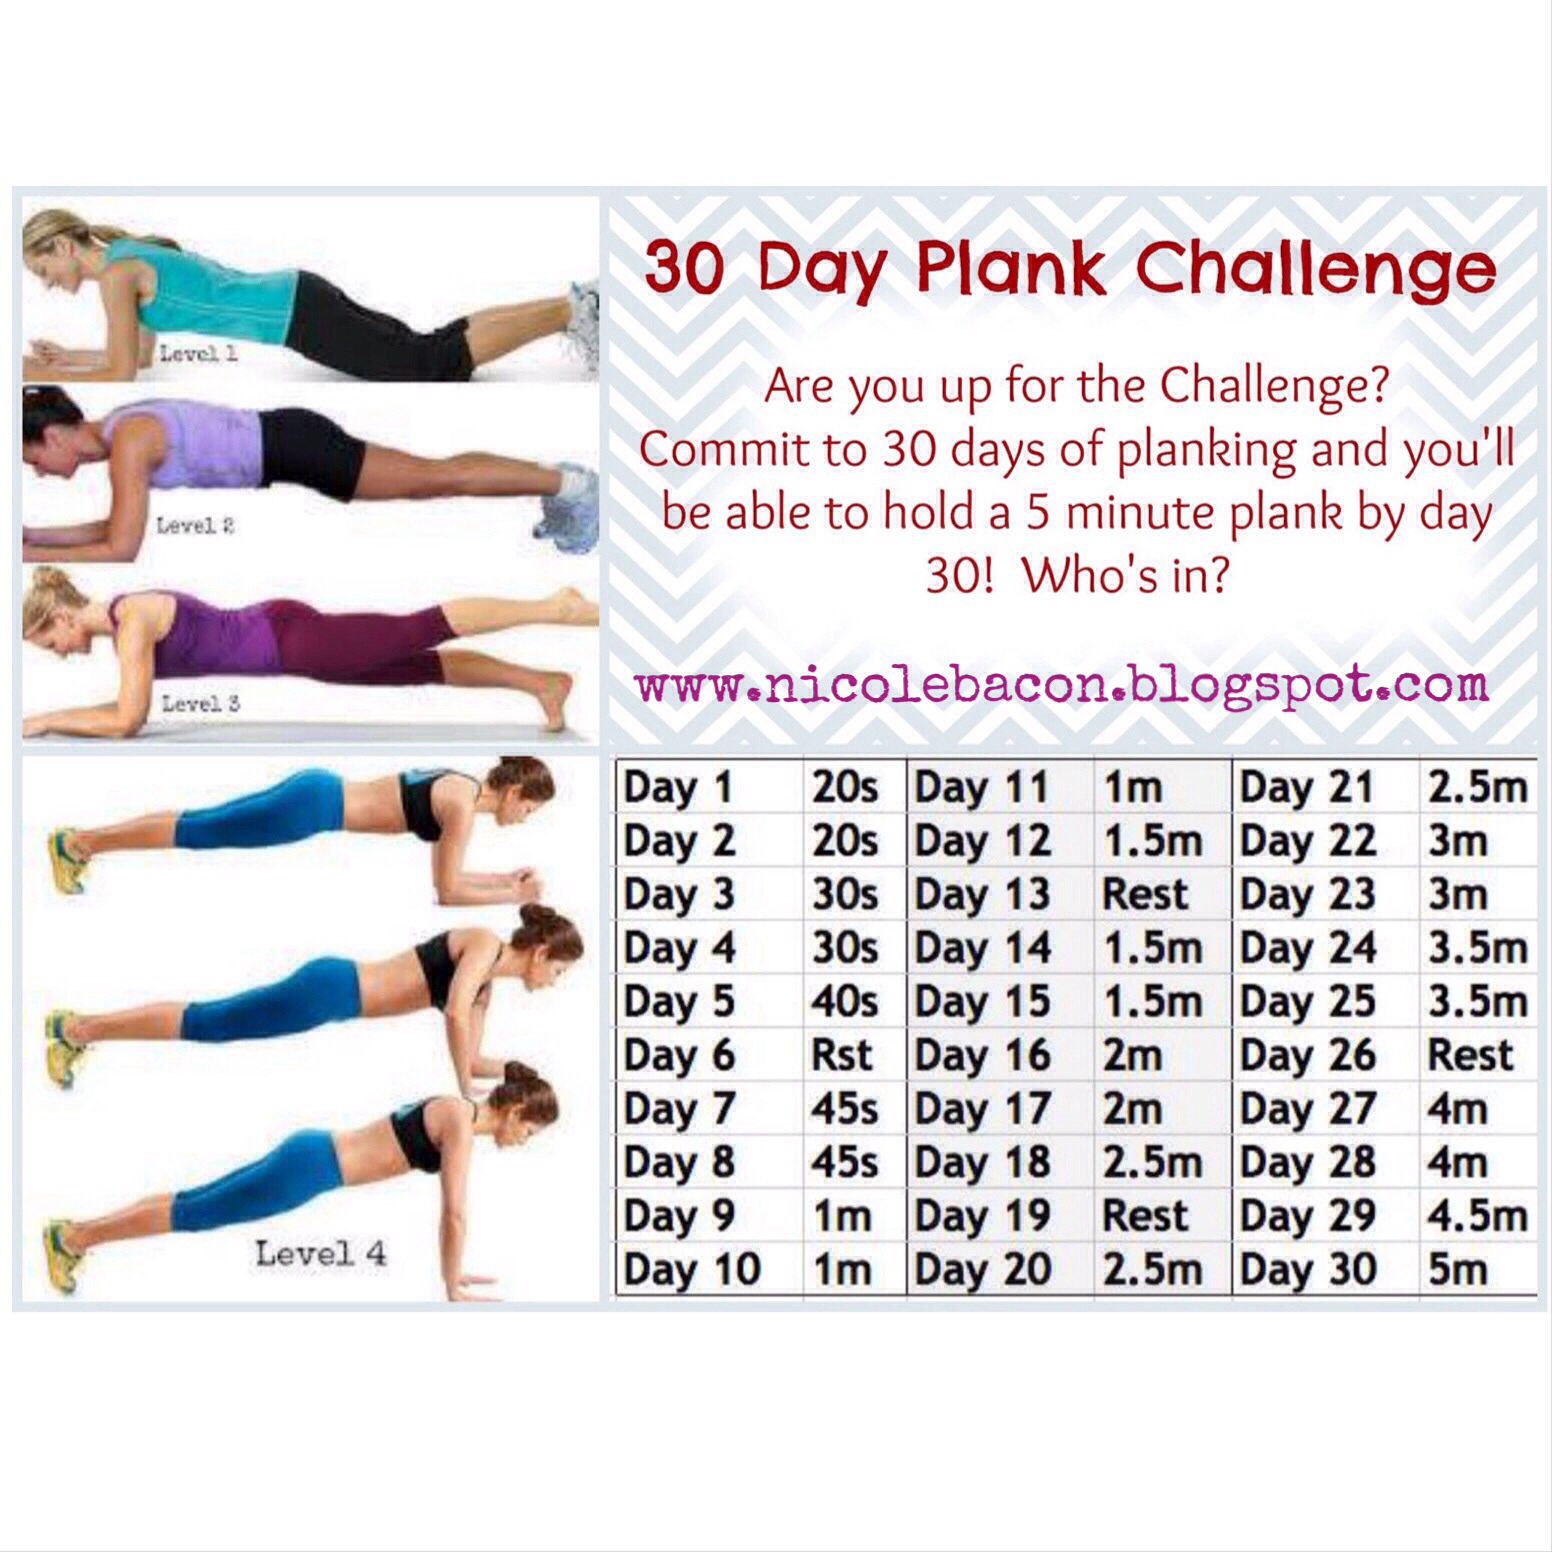 Планка для мужчин: как правильно делать, таблица на 30 дней, результаты после упражнения